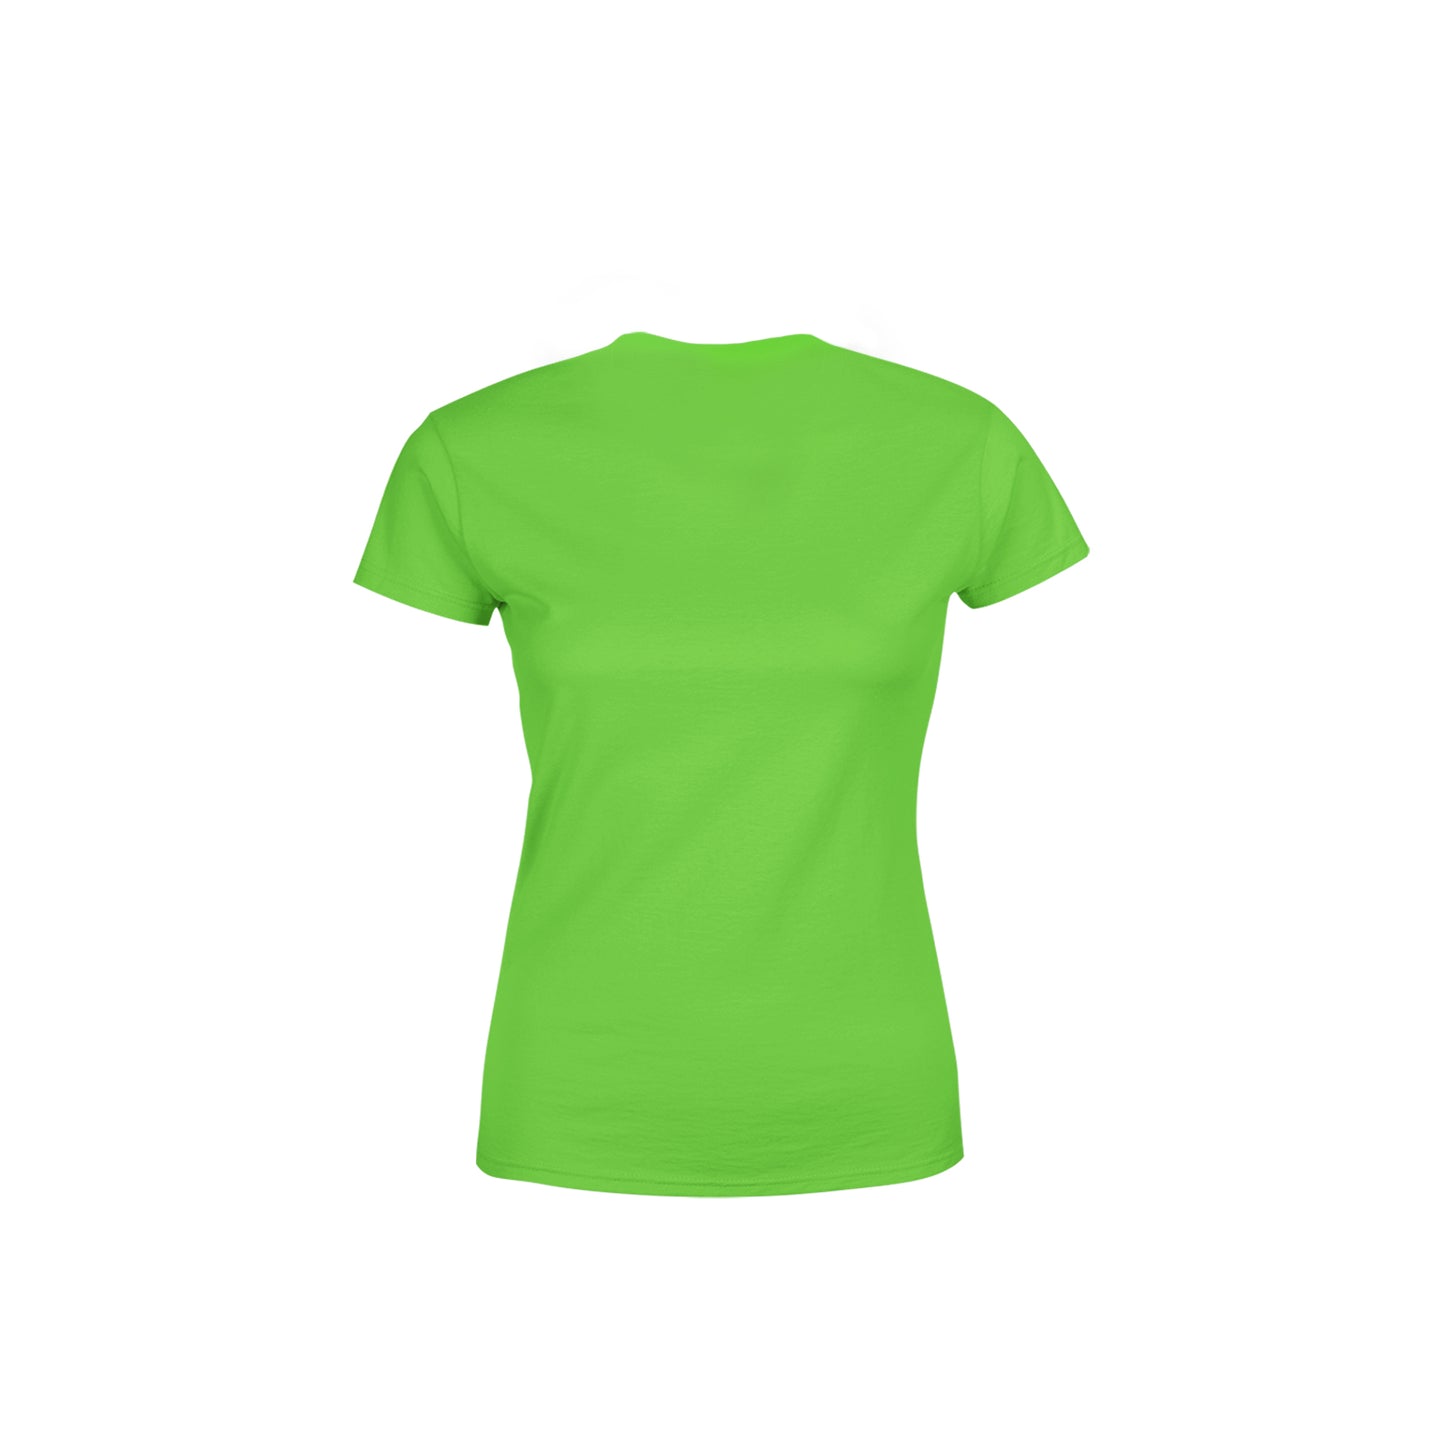 14 Number Women's T-Shirt (Liril Green)